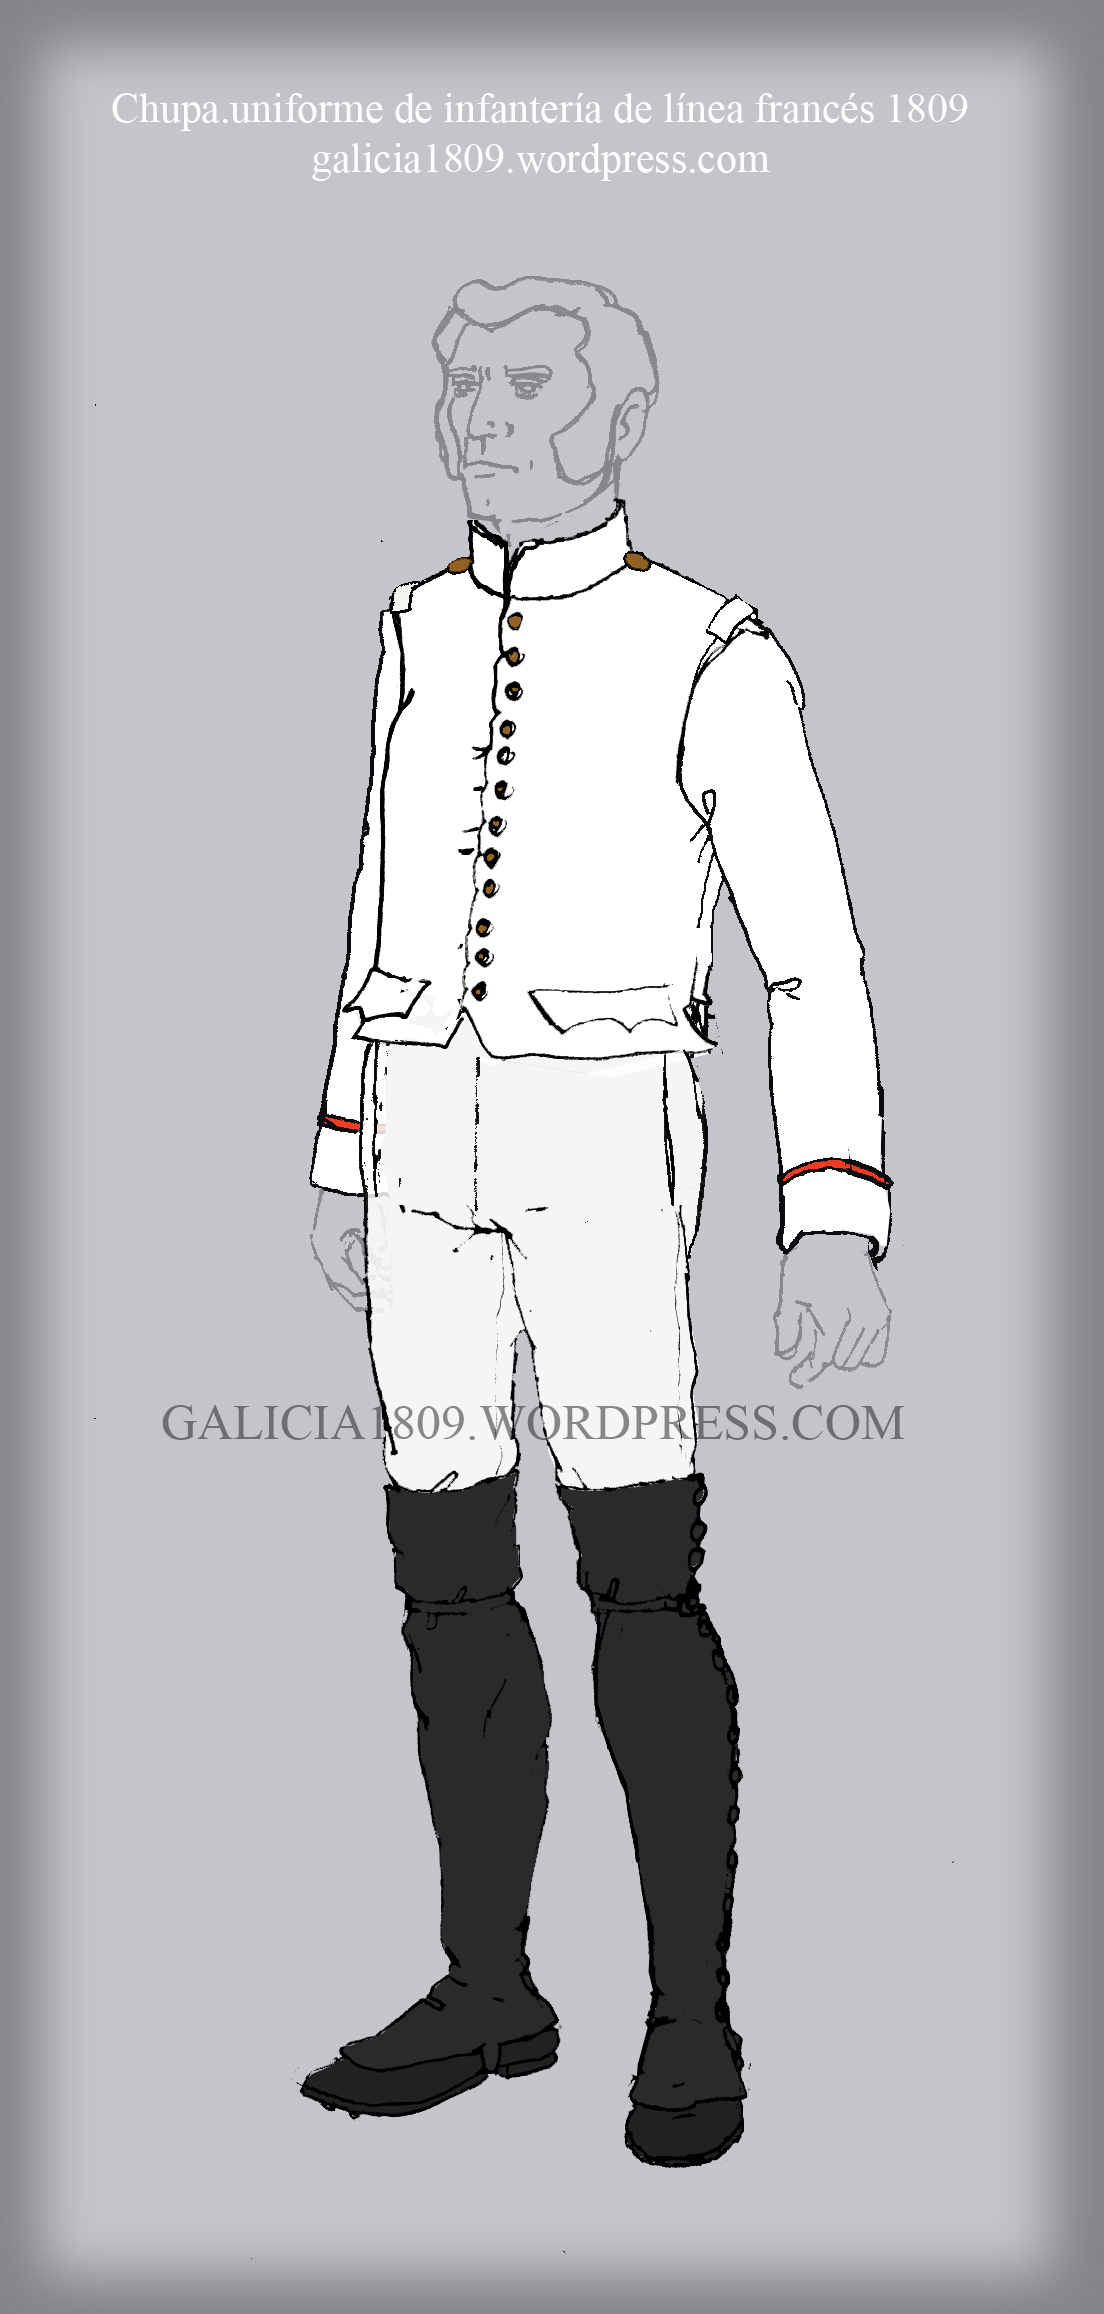 veste-a-manches-french-line-uniform-1809-galicia1809-wordpress-com.jpg